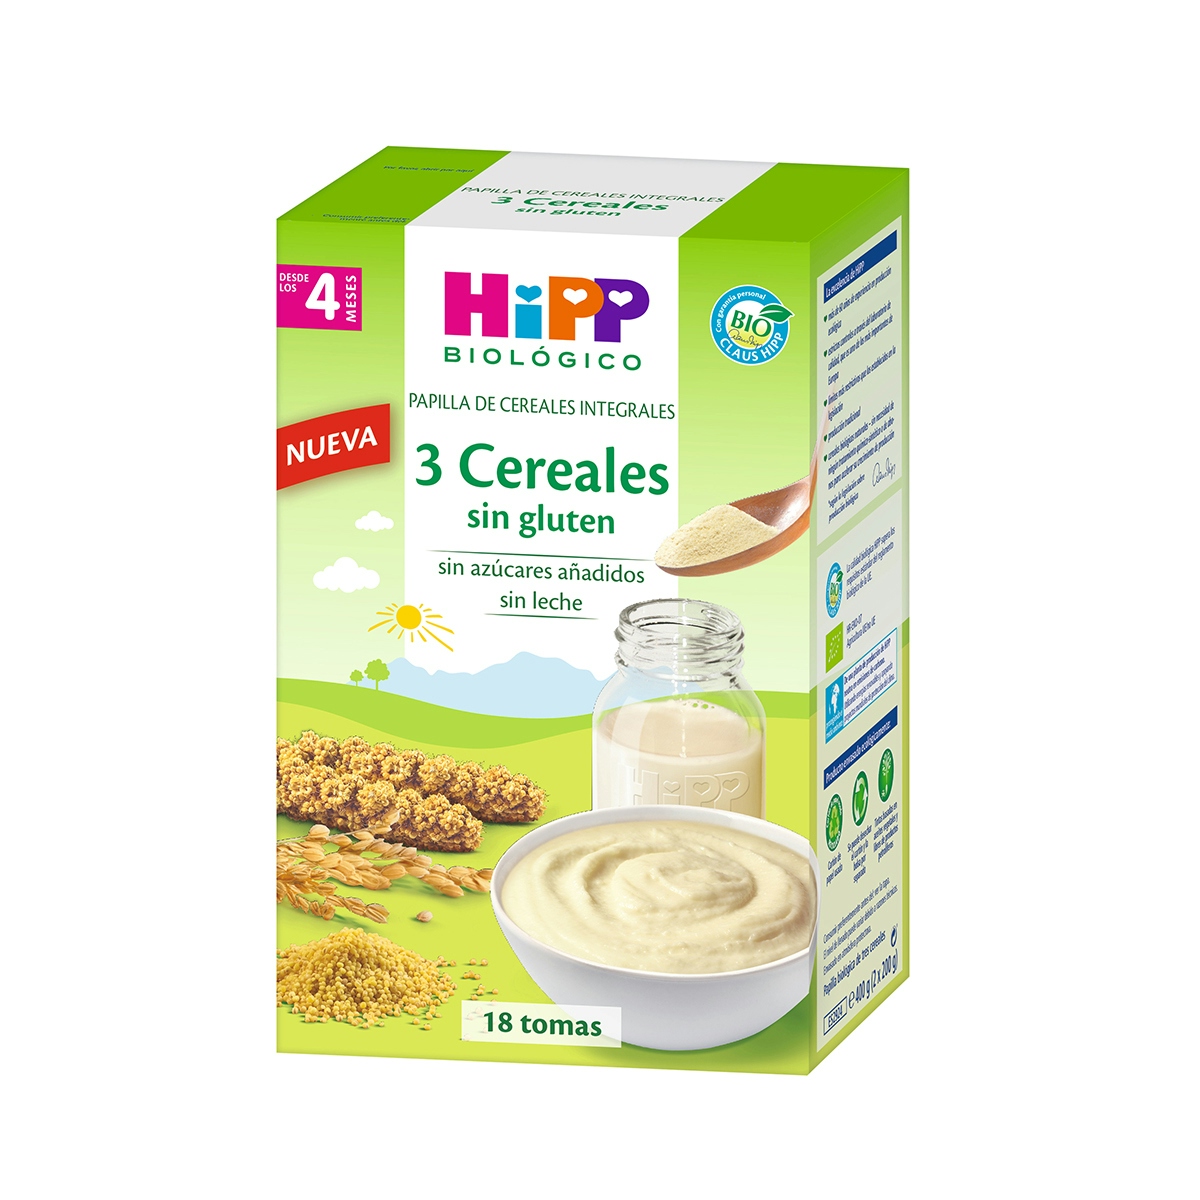 Papillas de cereales integrales 3 cereales biológico HIPP 400 gr